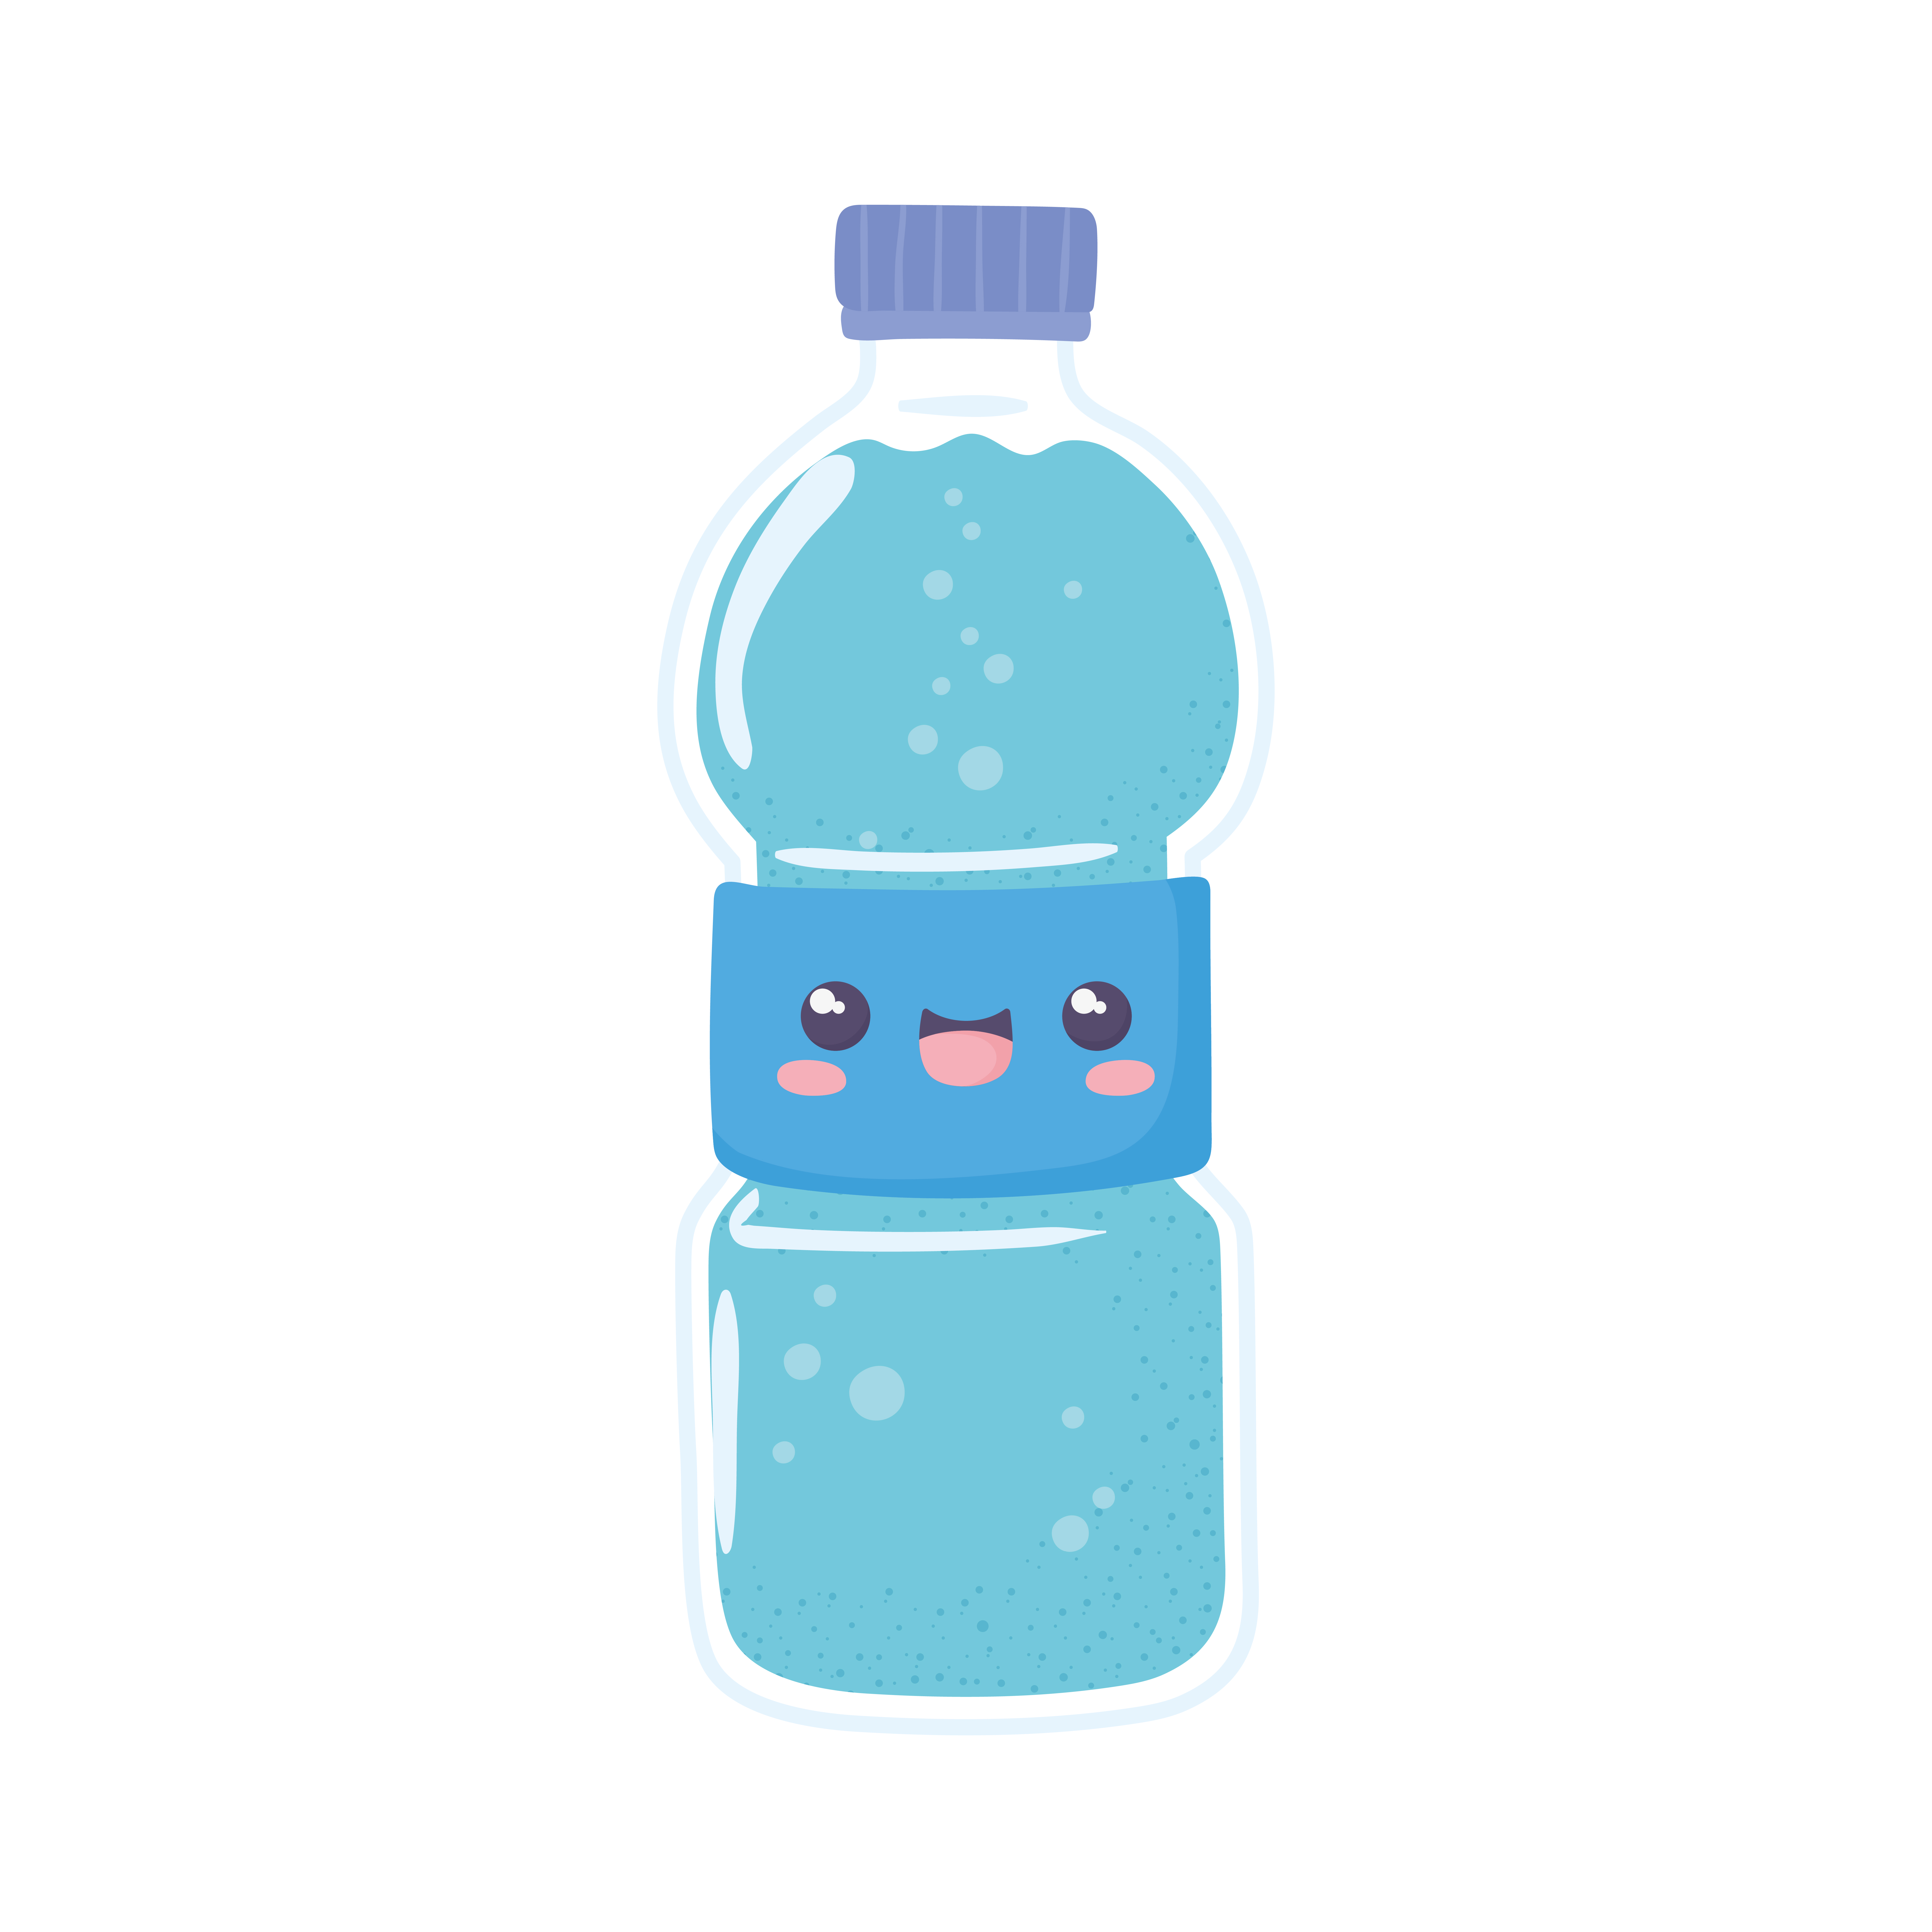 water bottle cartoon 3672649 Vector Art at Vecteezy